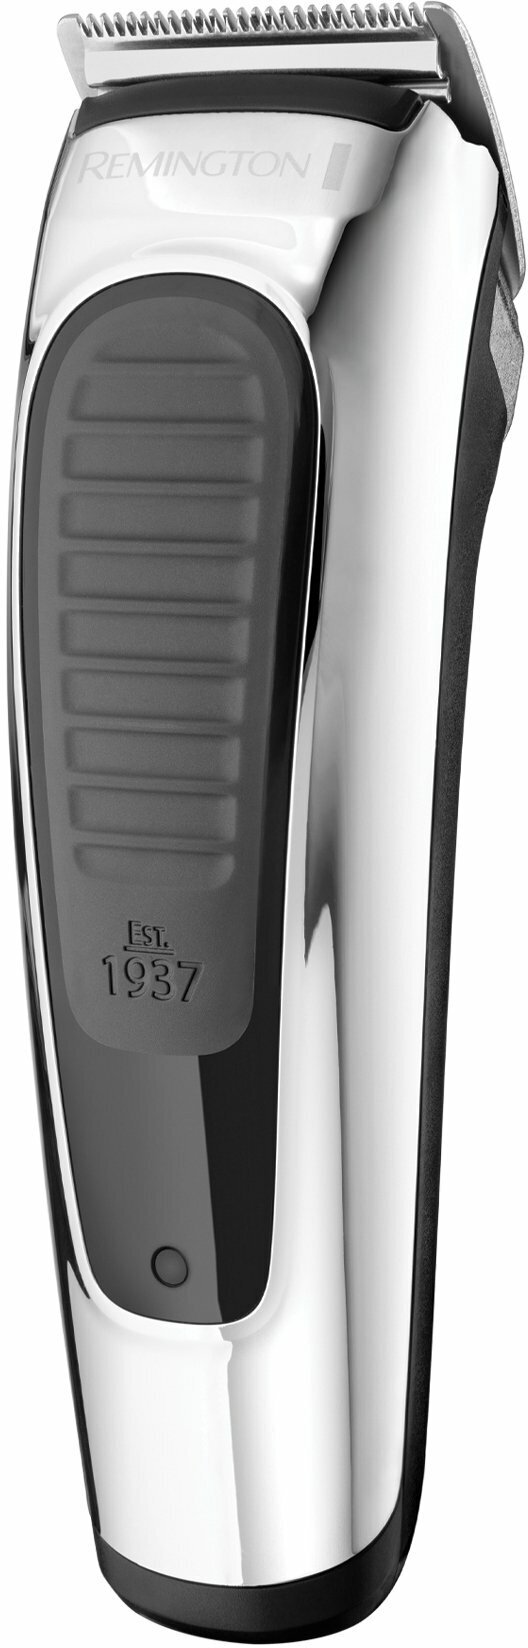 Машинка для стрижки Remington HC450, silver/black - фото №8